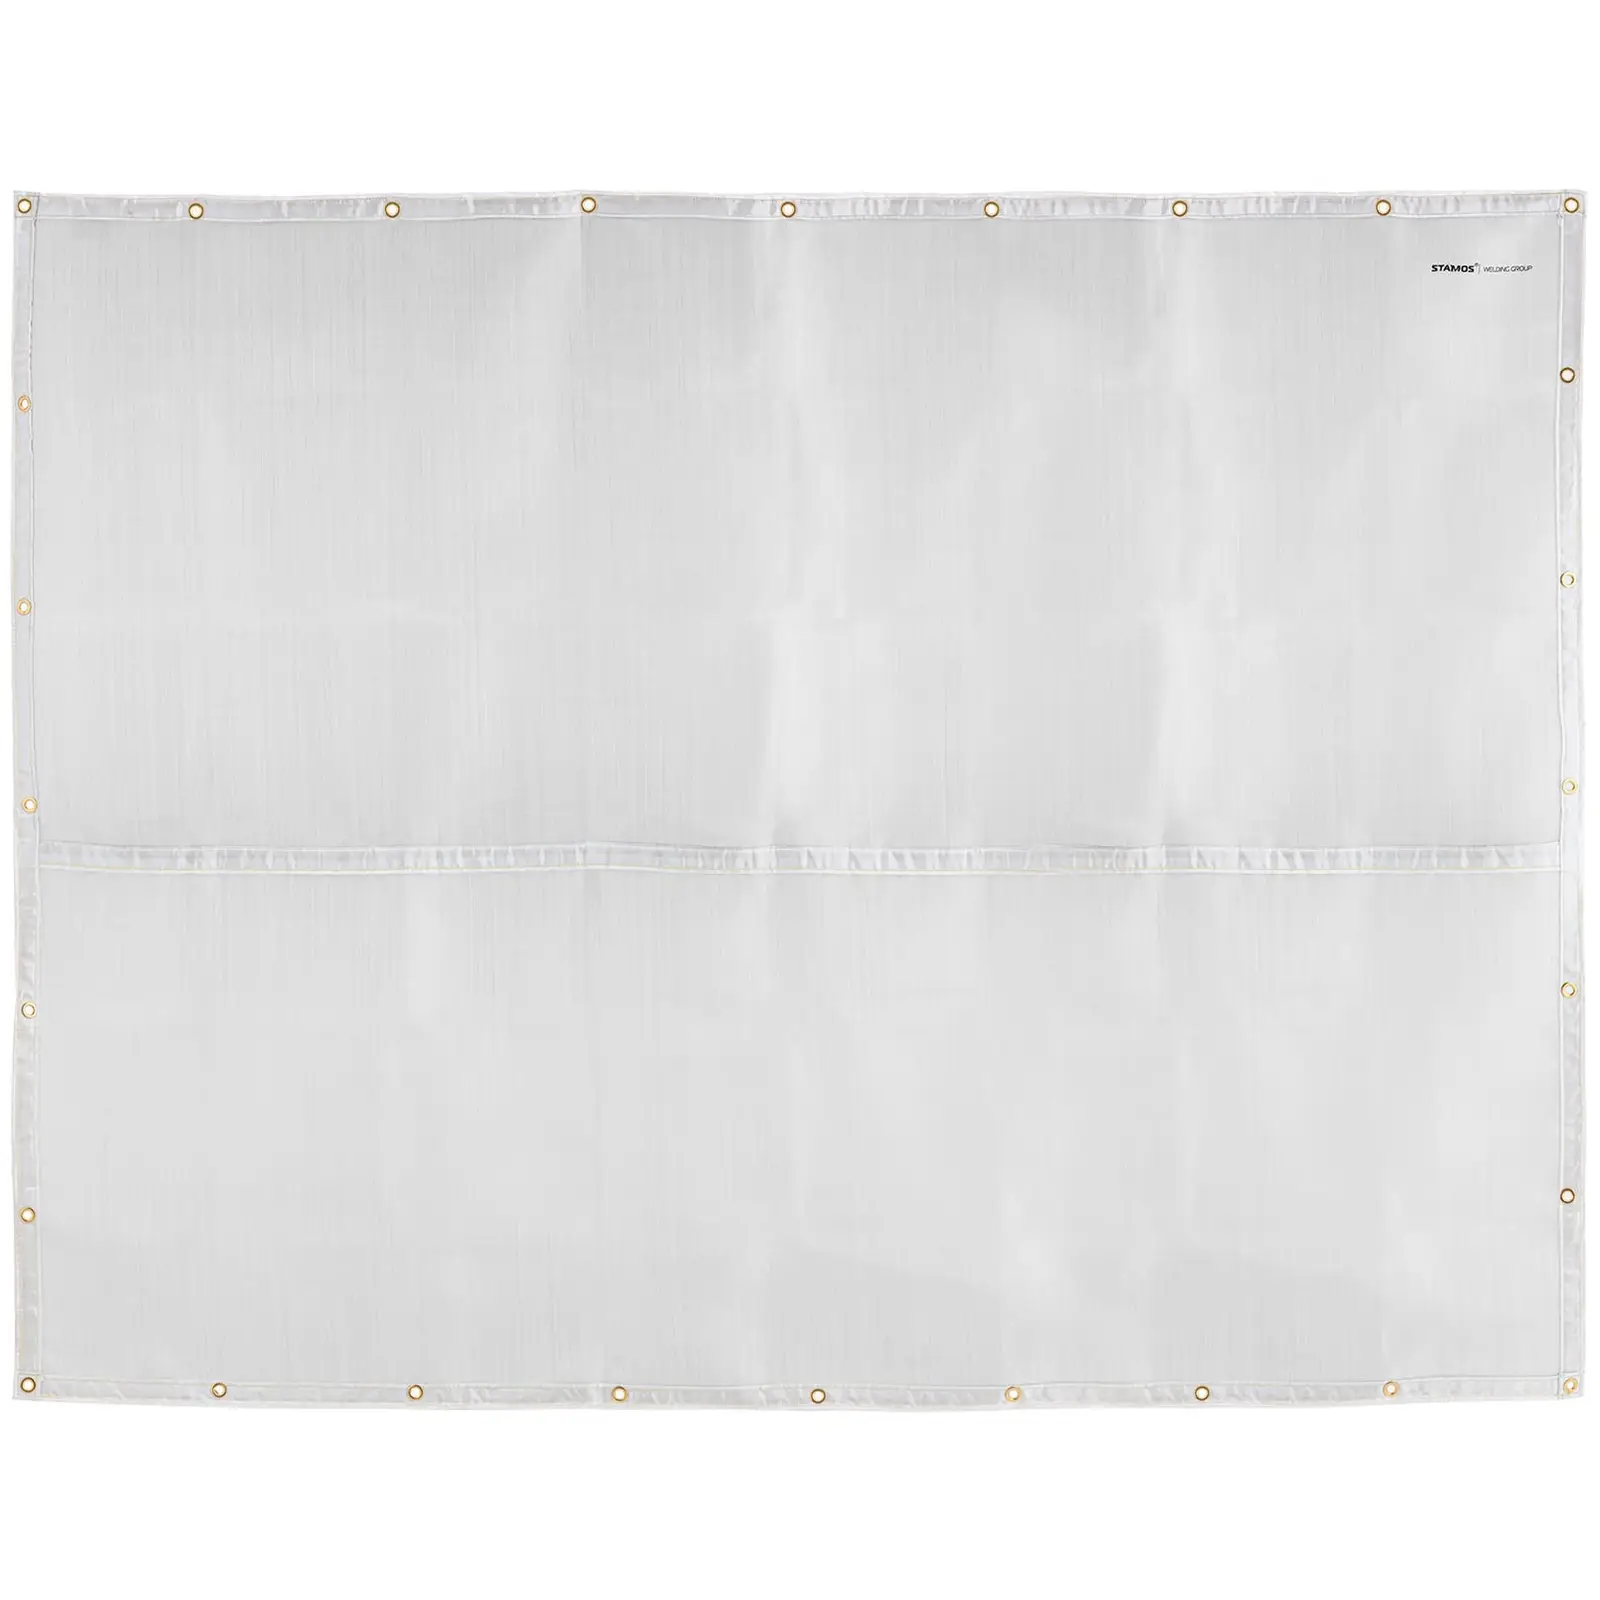 Coperta ignifuga - Fibra di vetro - 236 x 174 cm - Fino a 1.000 °C